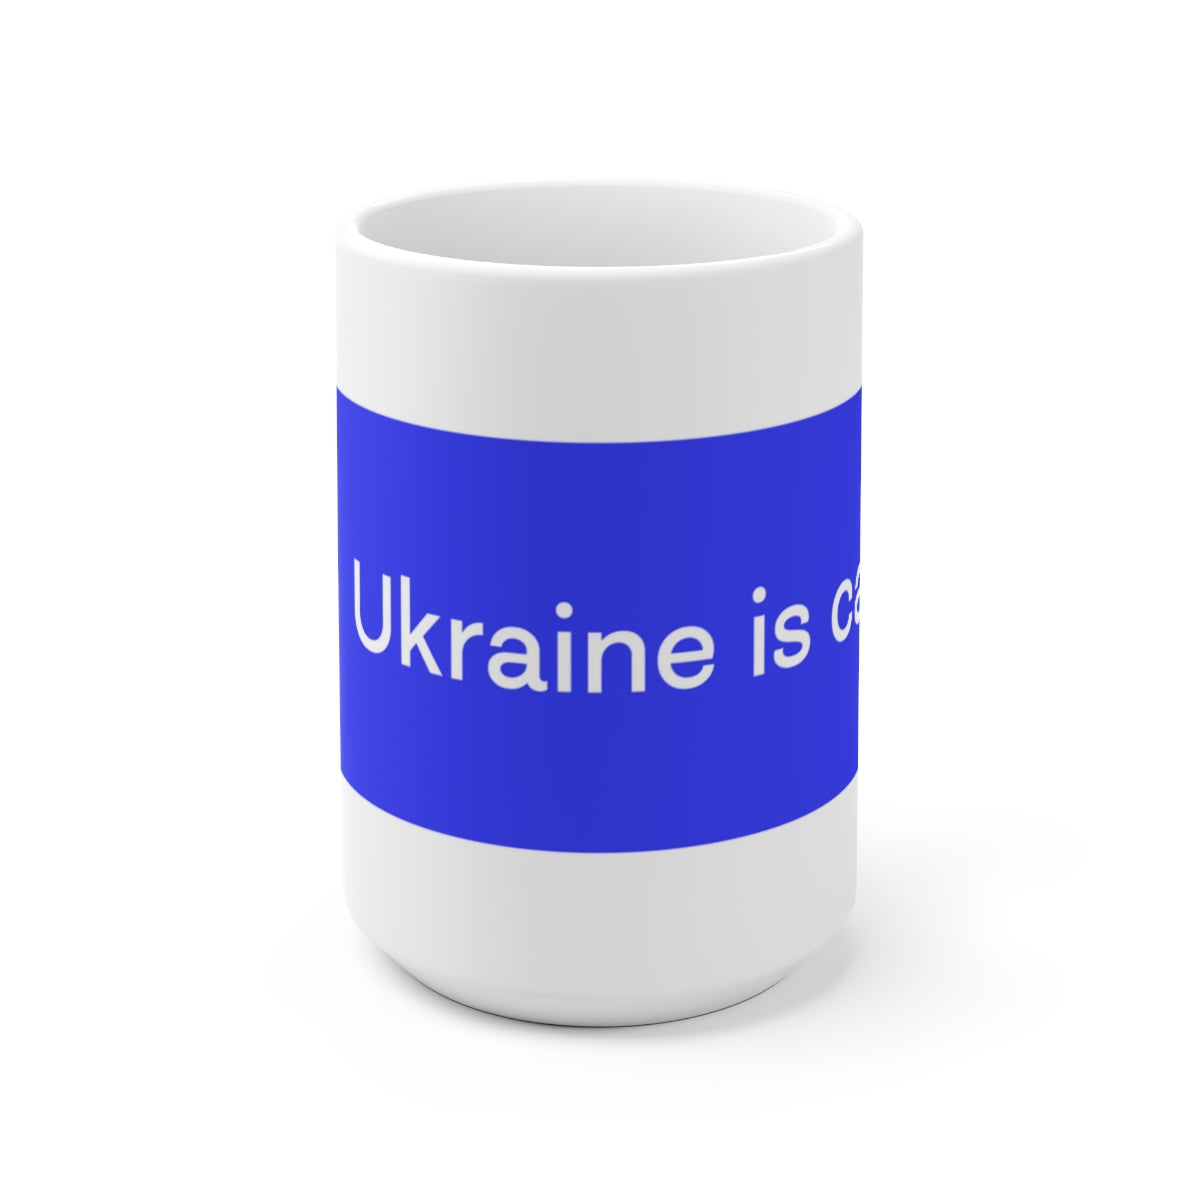 乌克兰在召唤——陶瓷杯